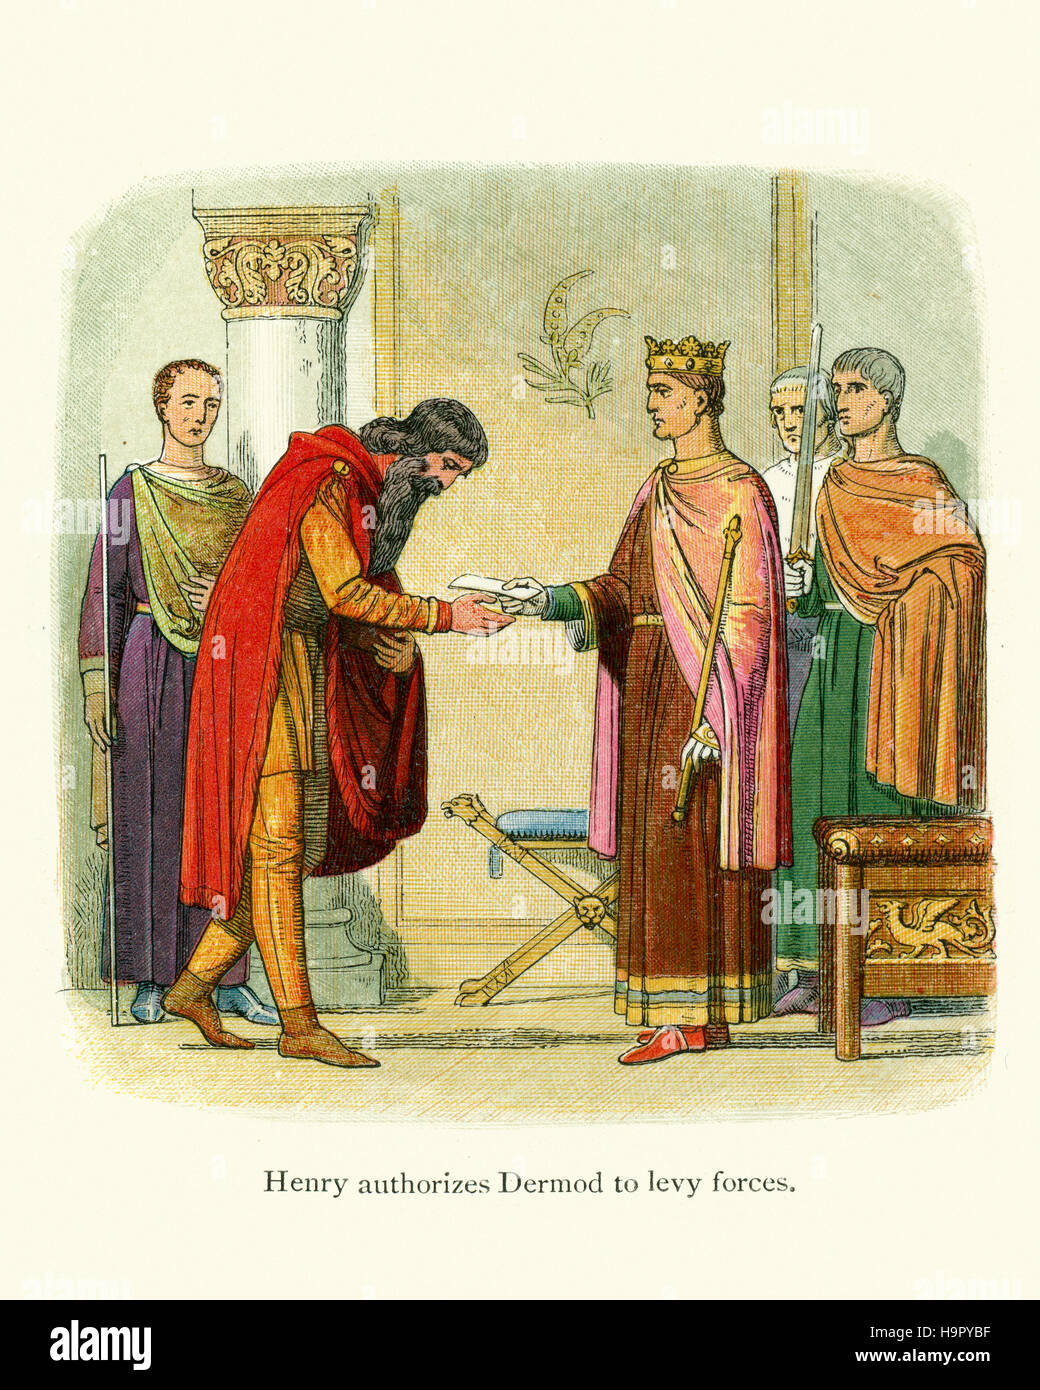 König Henry II Autorisieren von Dermot MacMurrough Kräfte zu erheben. Dermot MacMurrough war König von Leinster in Irland. Als König von Leinster verdrängt in 1166, Stockfoto